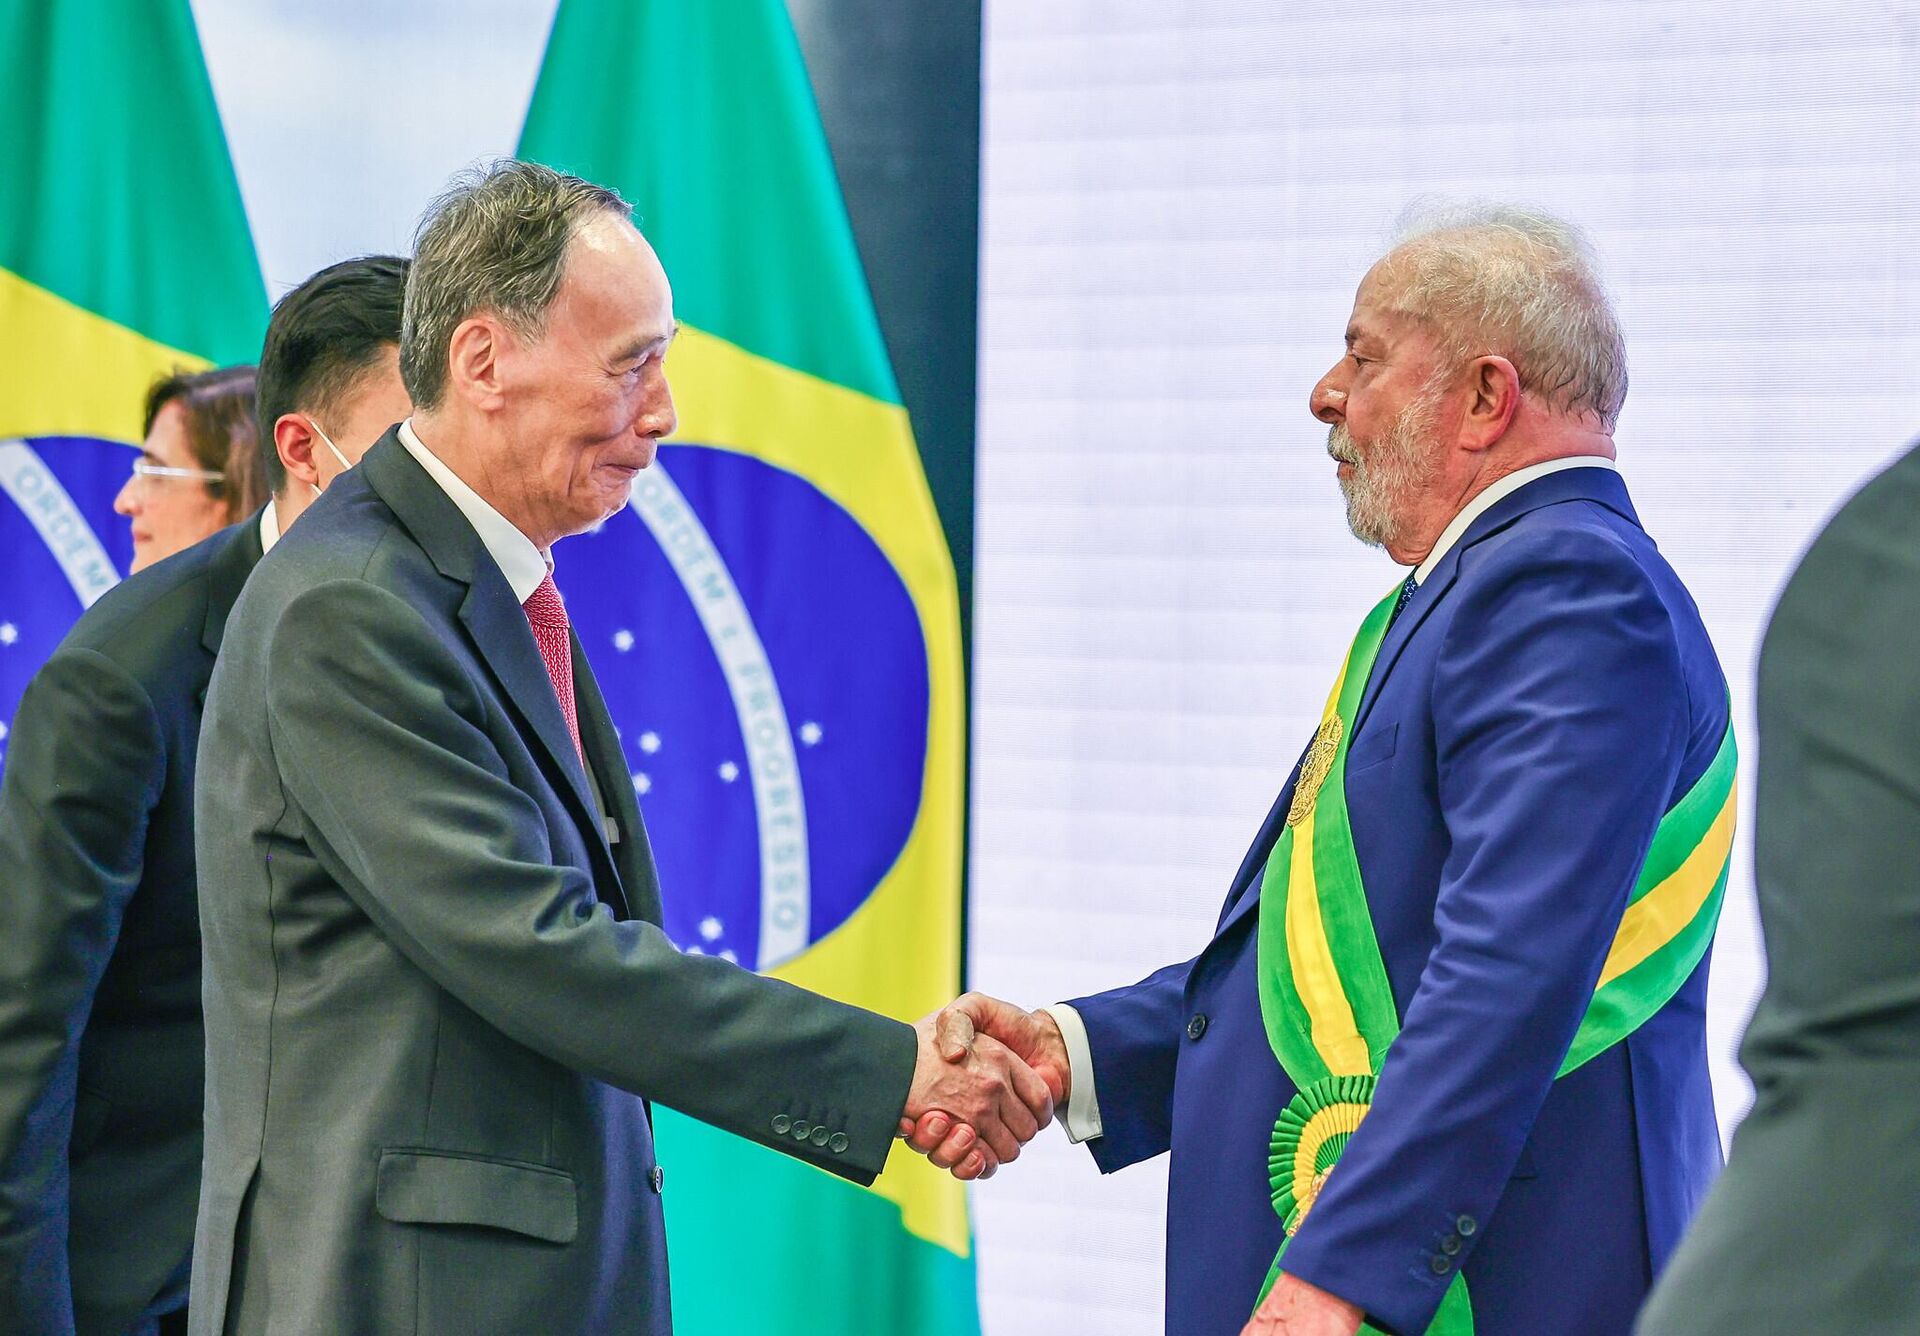 El vicepresidente chino, Wang Qishan, saluda al presidente Luiz Inácio Lula da Silva después de su toma de posesión. Brasilia, Brasil, 1 de enero de 2023 - Sputnik Mundo, 1920, 06.04.2023